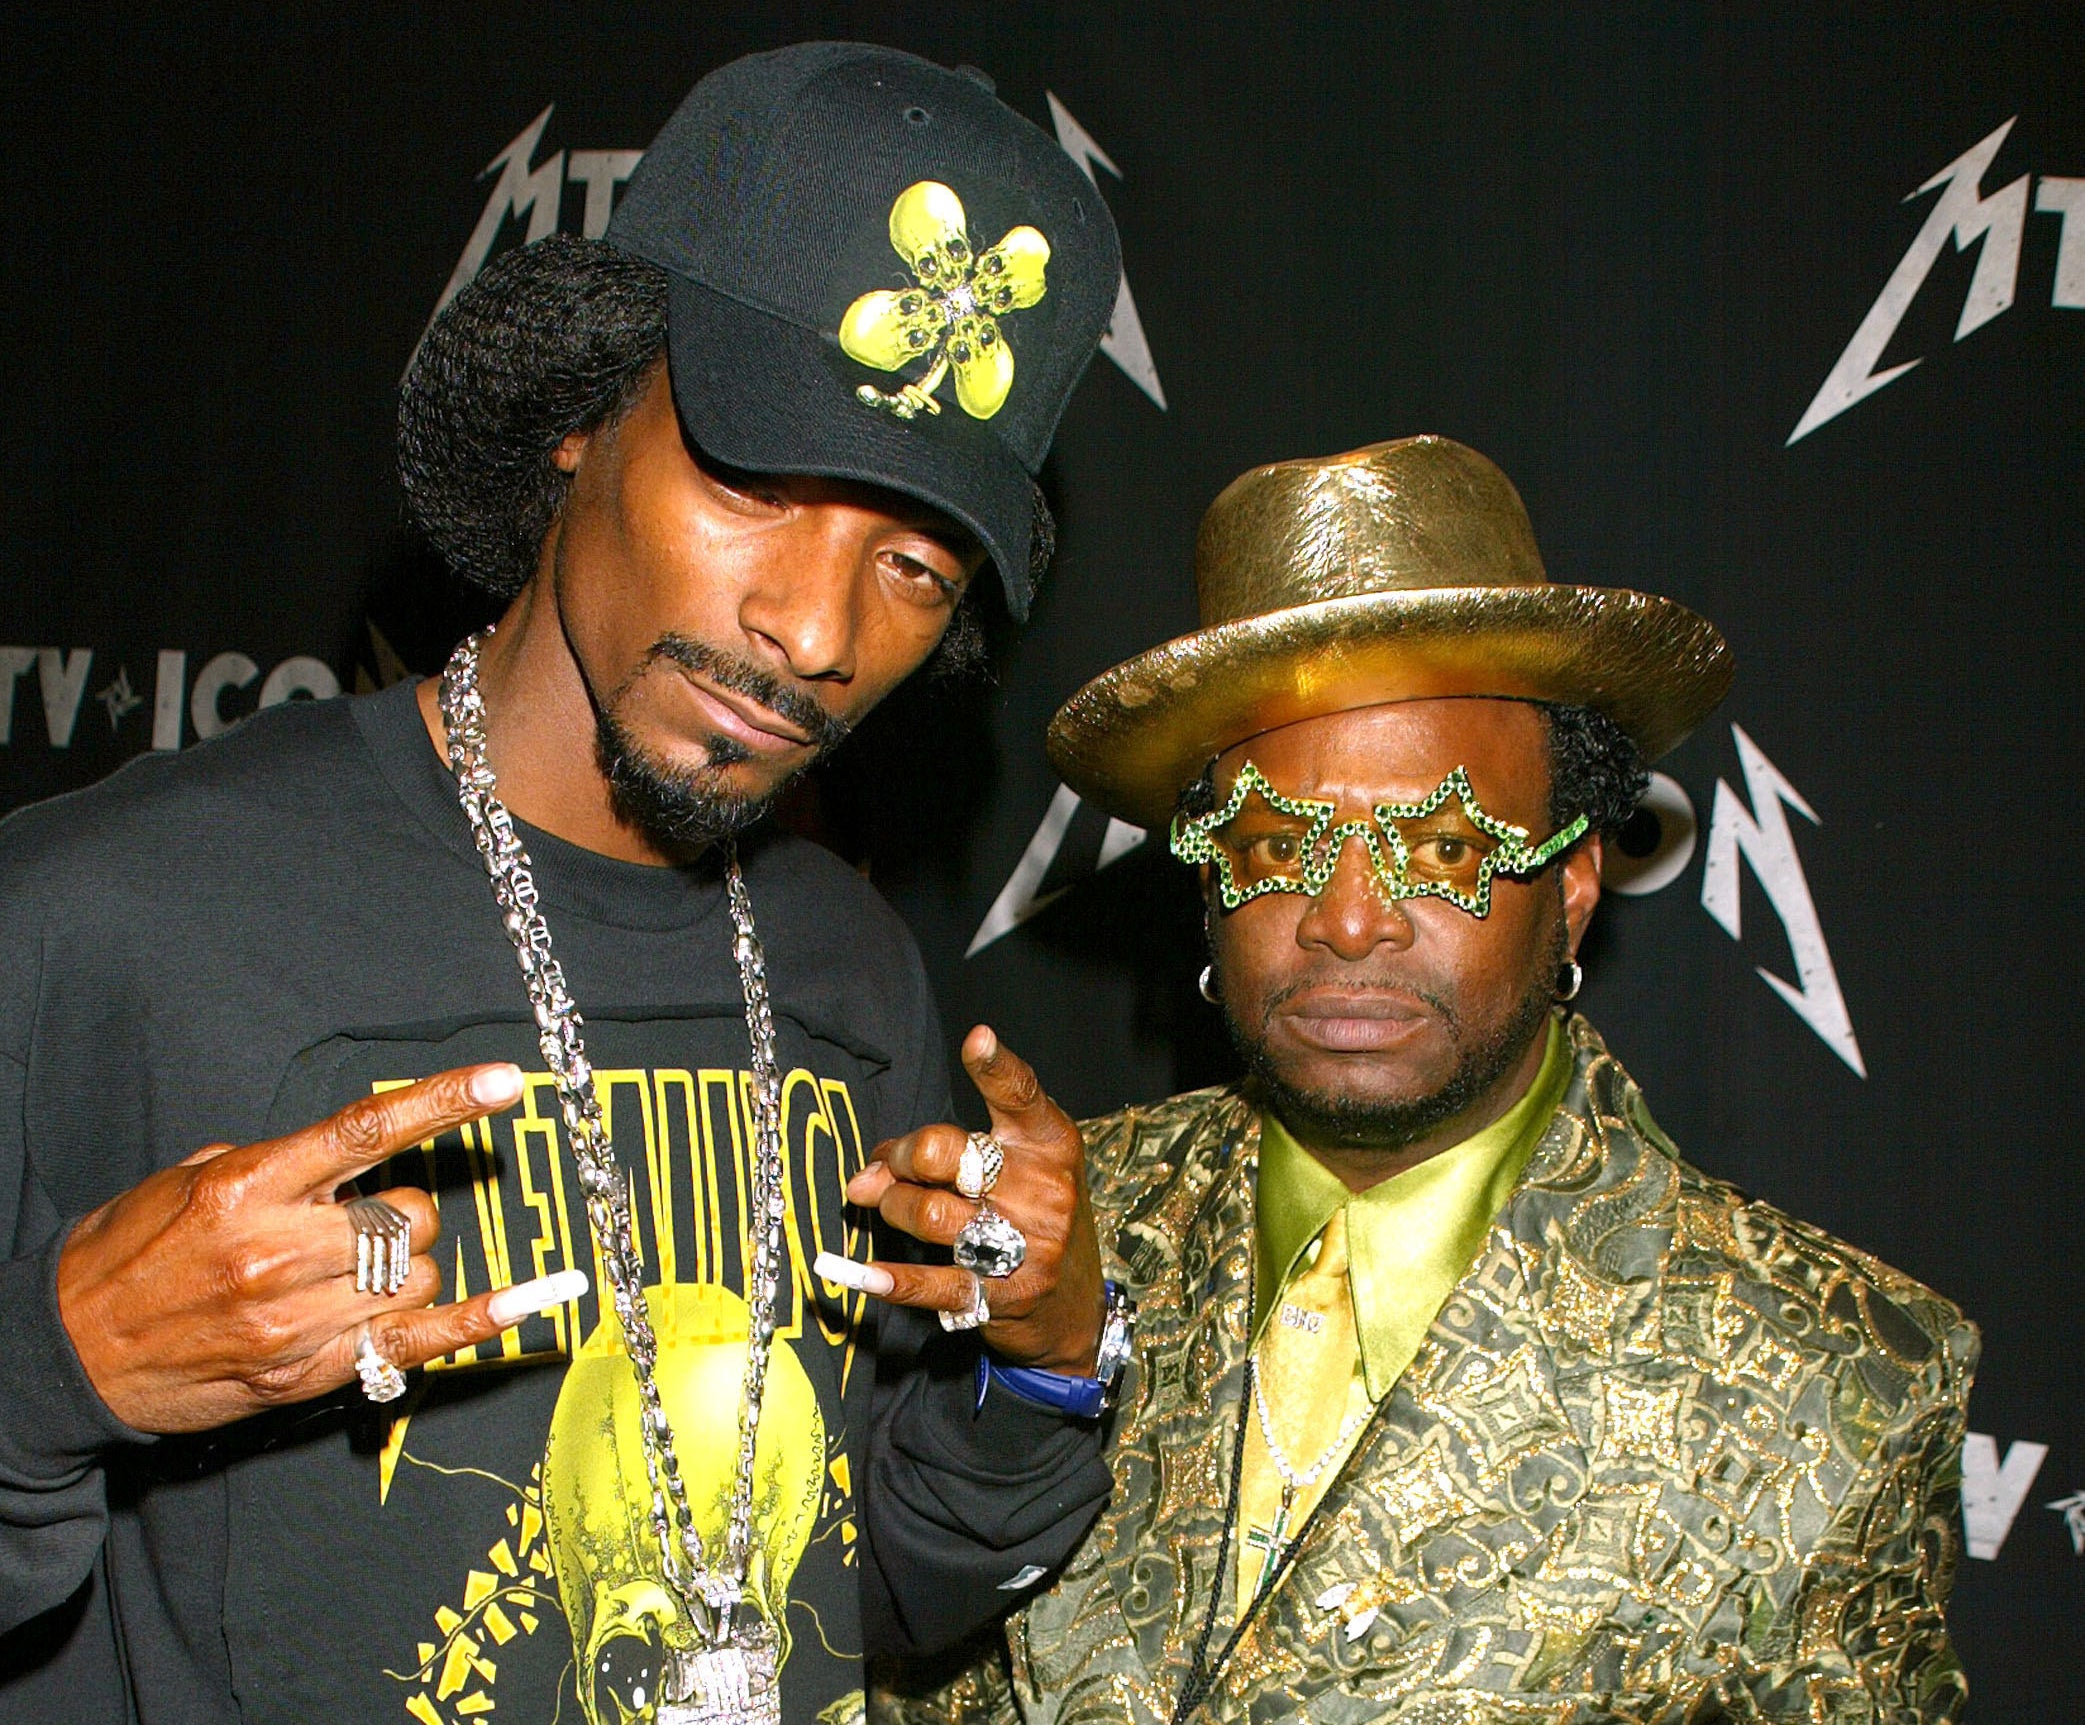 Snoop and Bishop posing together